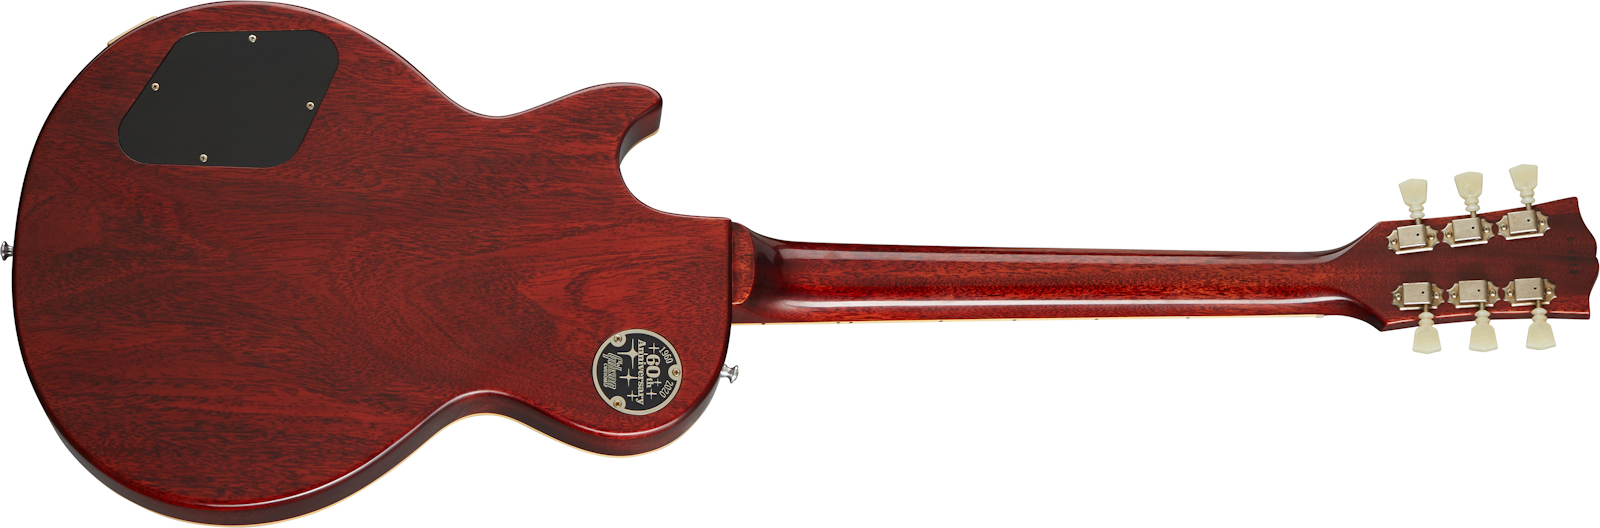 Gibson Custom Shop Les Paul Standard 1960 V2 60th Anniversary 2h Ht Rw - Vos Orange Lemon Fade - Guitare Électrique Single Cut - Variation 1